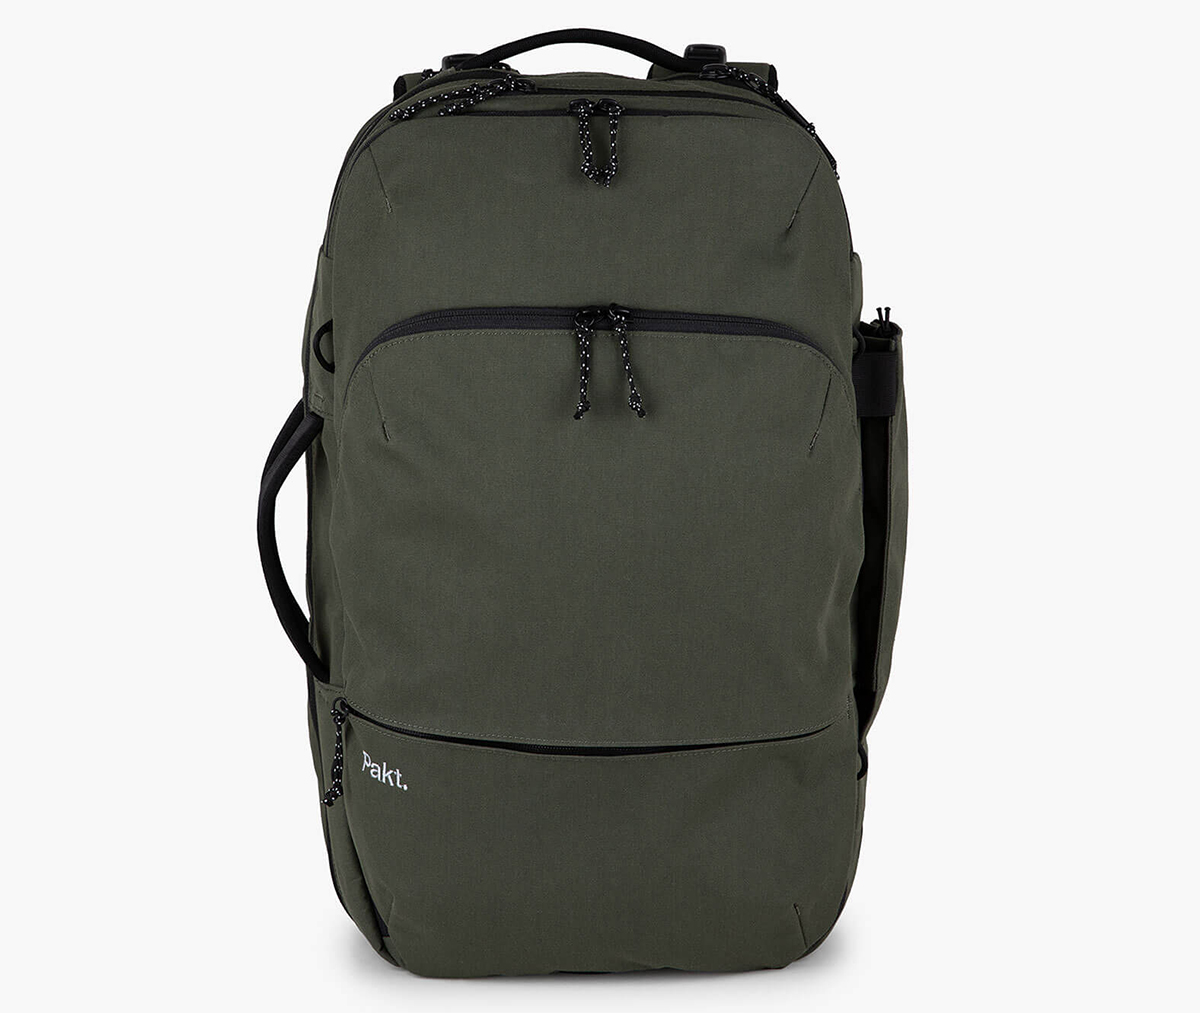 Pakt Travel Backpack 2.0 – Best MacBook travel backpack